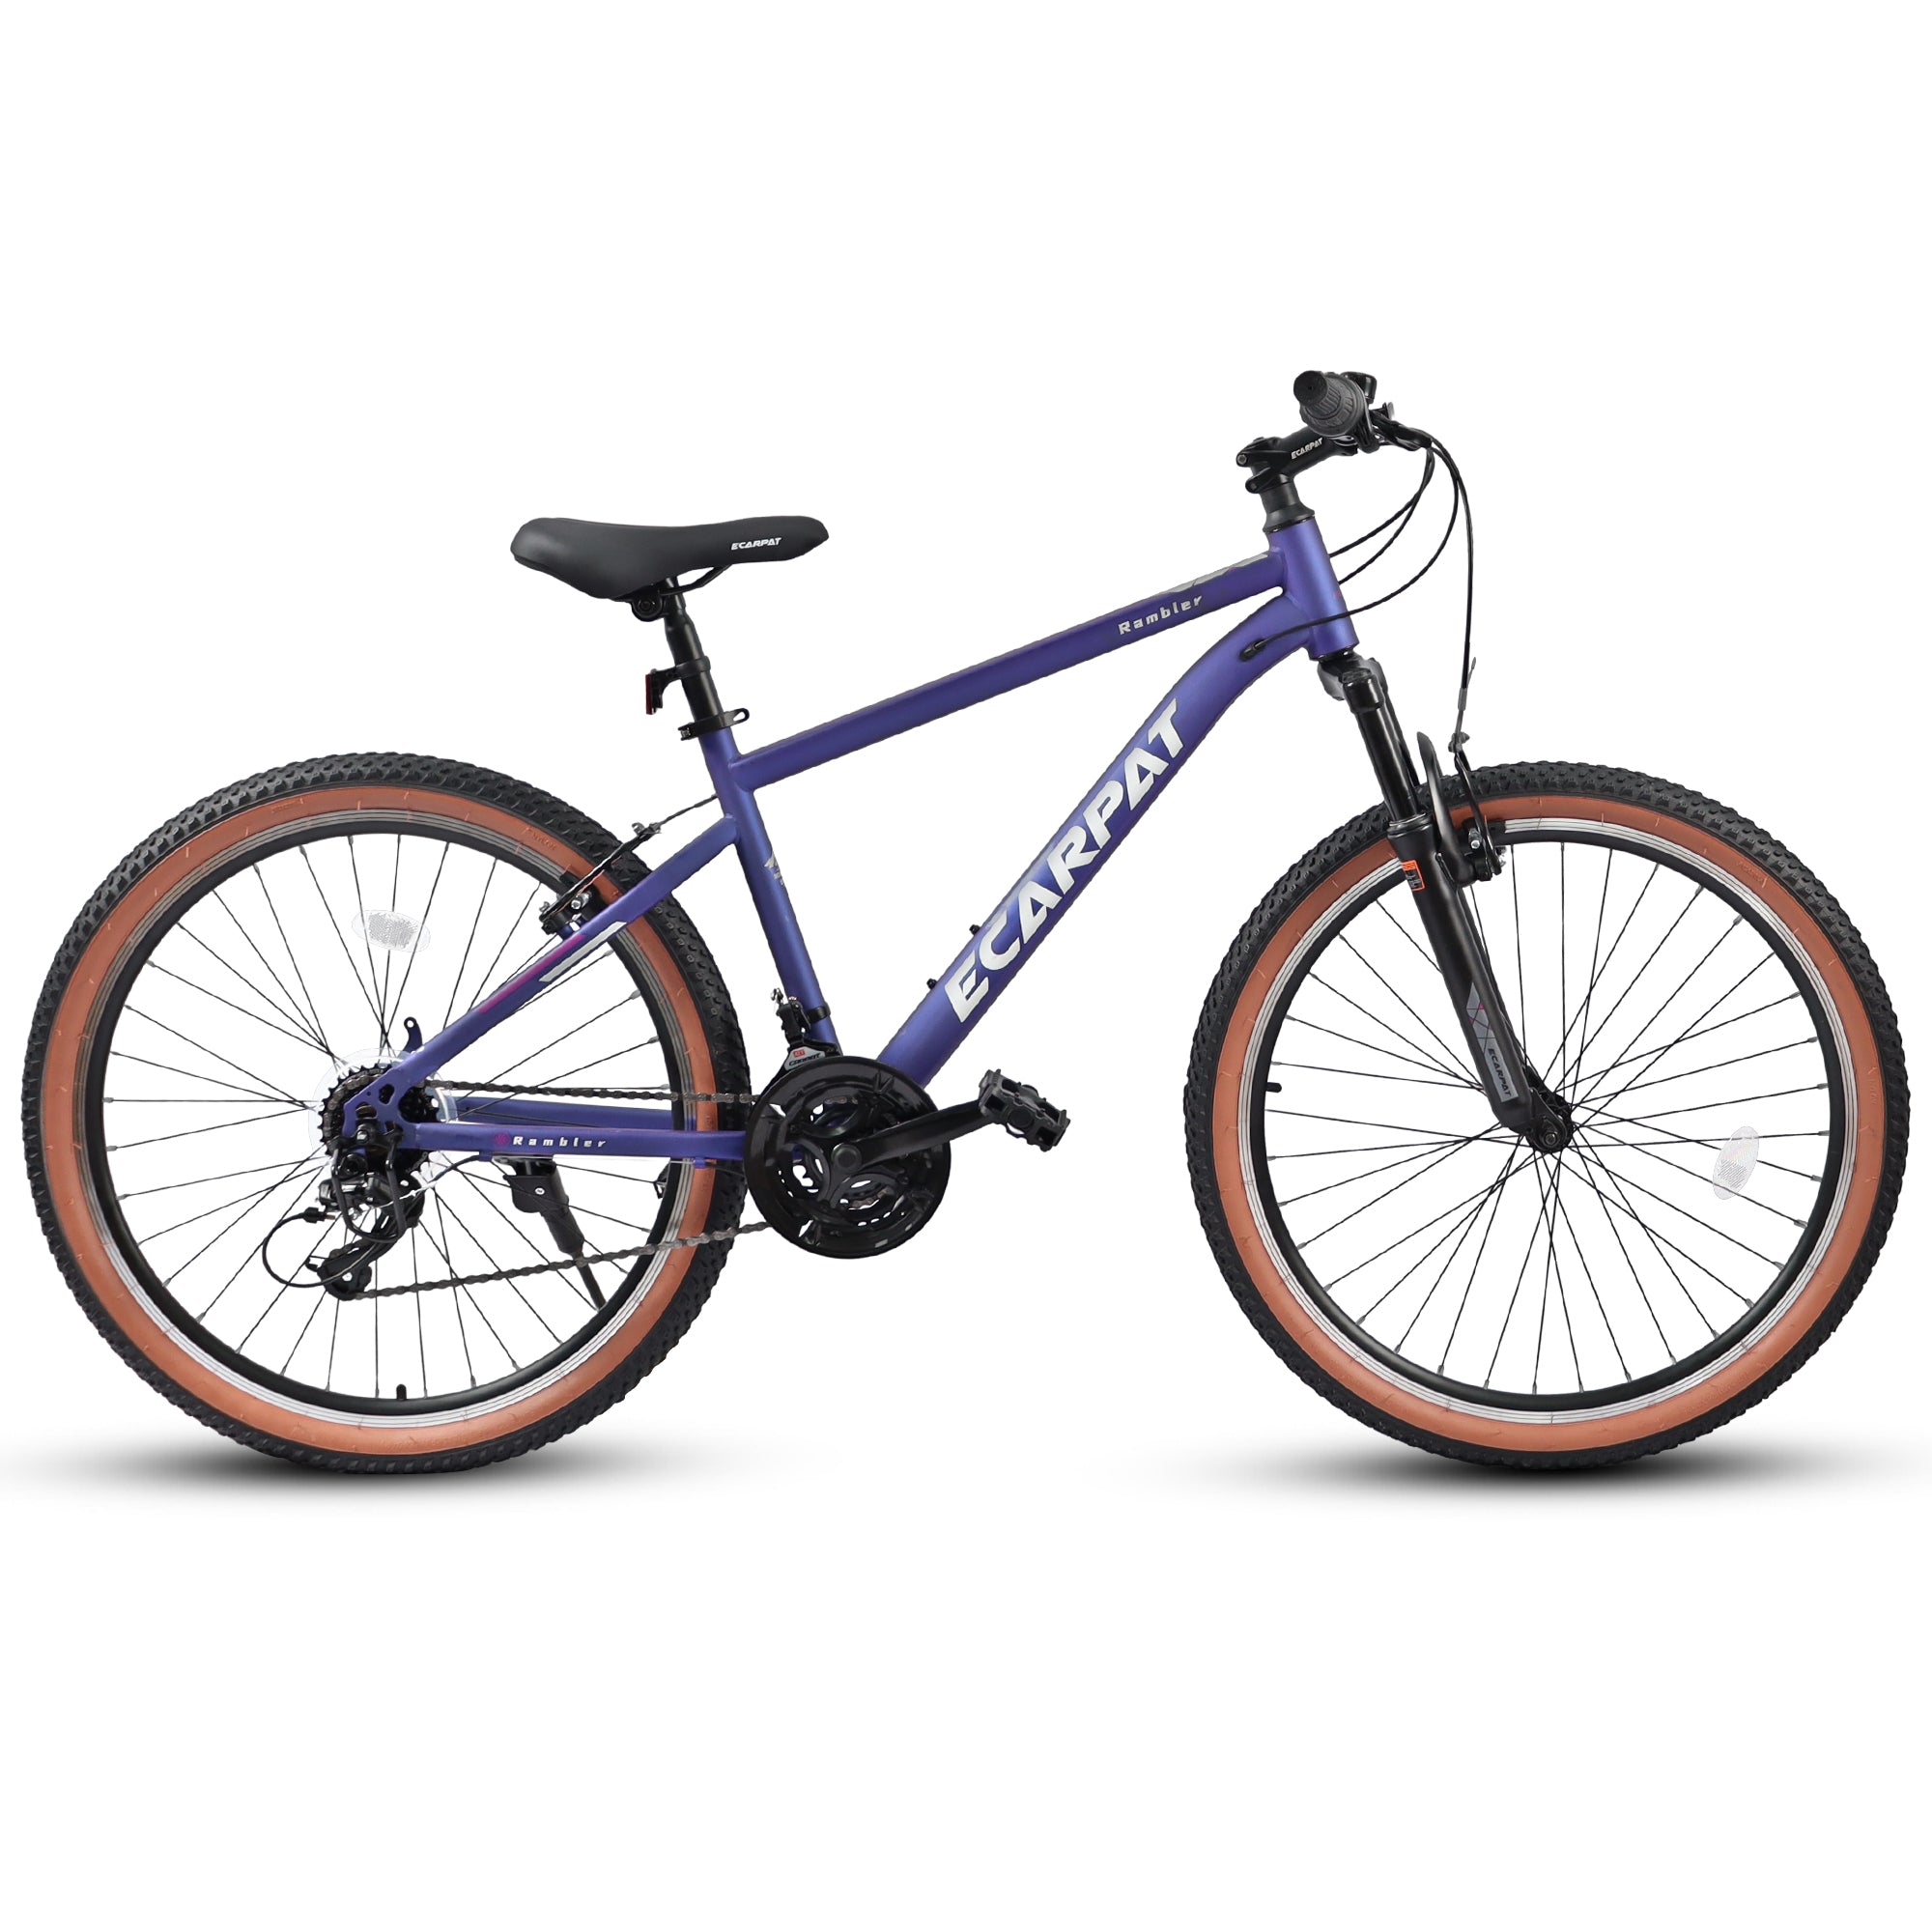 A26301 Ecarpat Mountain Bike 26 Inch Wheels, 21 Speed cycling-blue-durable-garden &